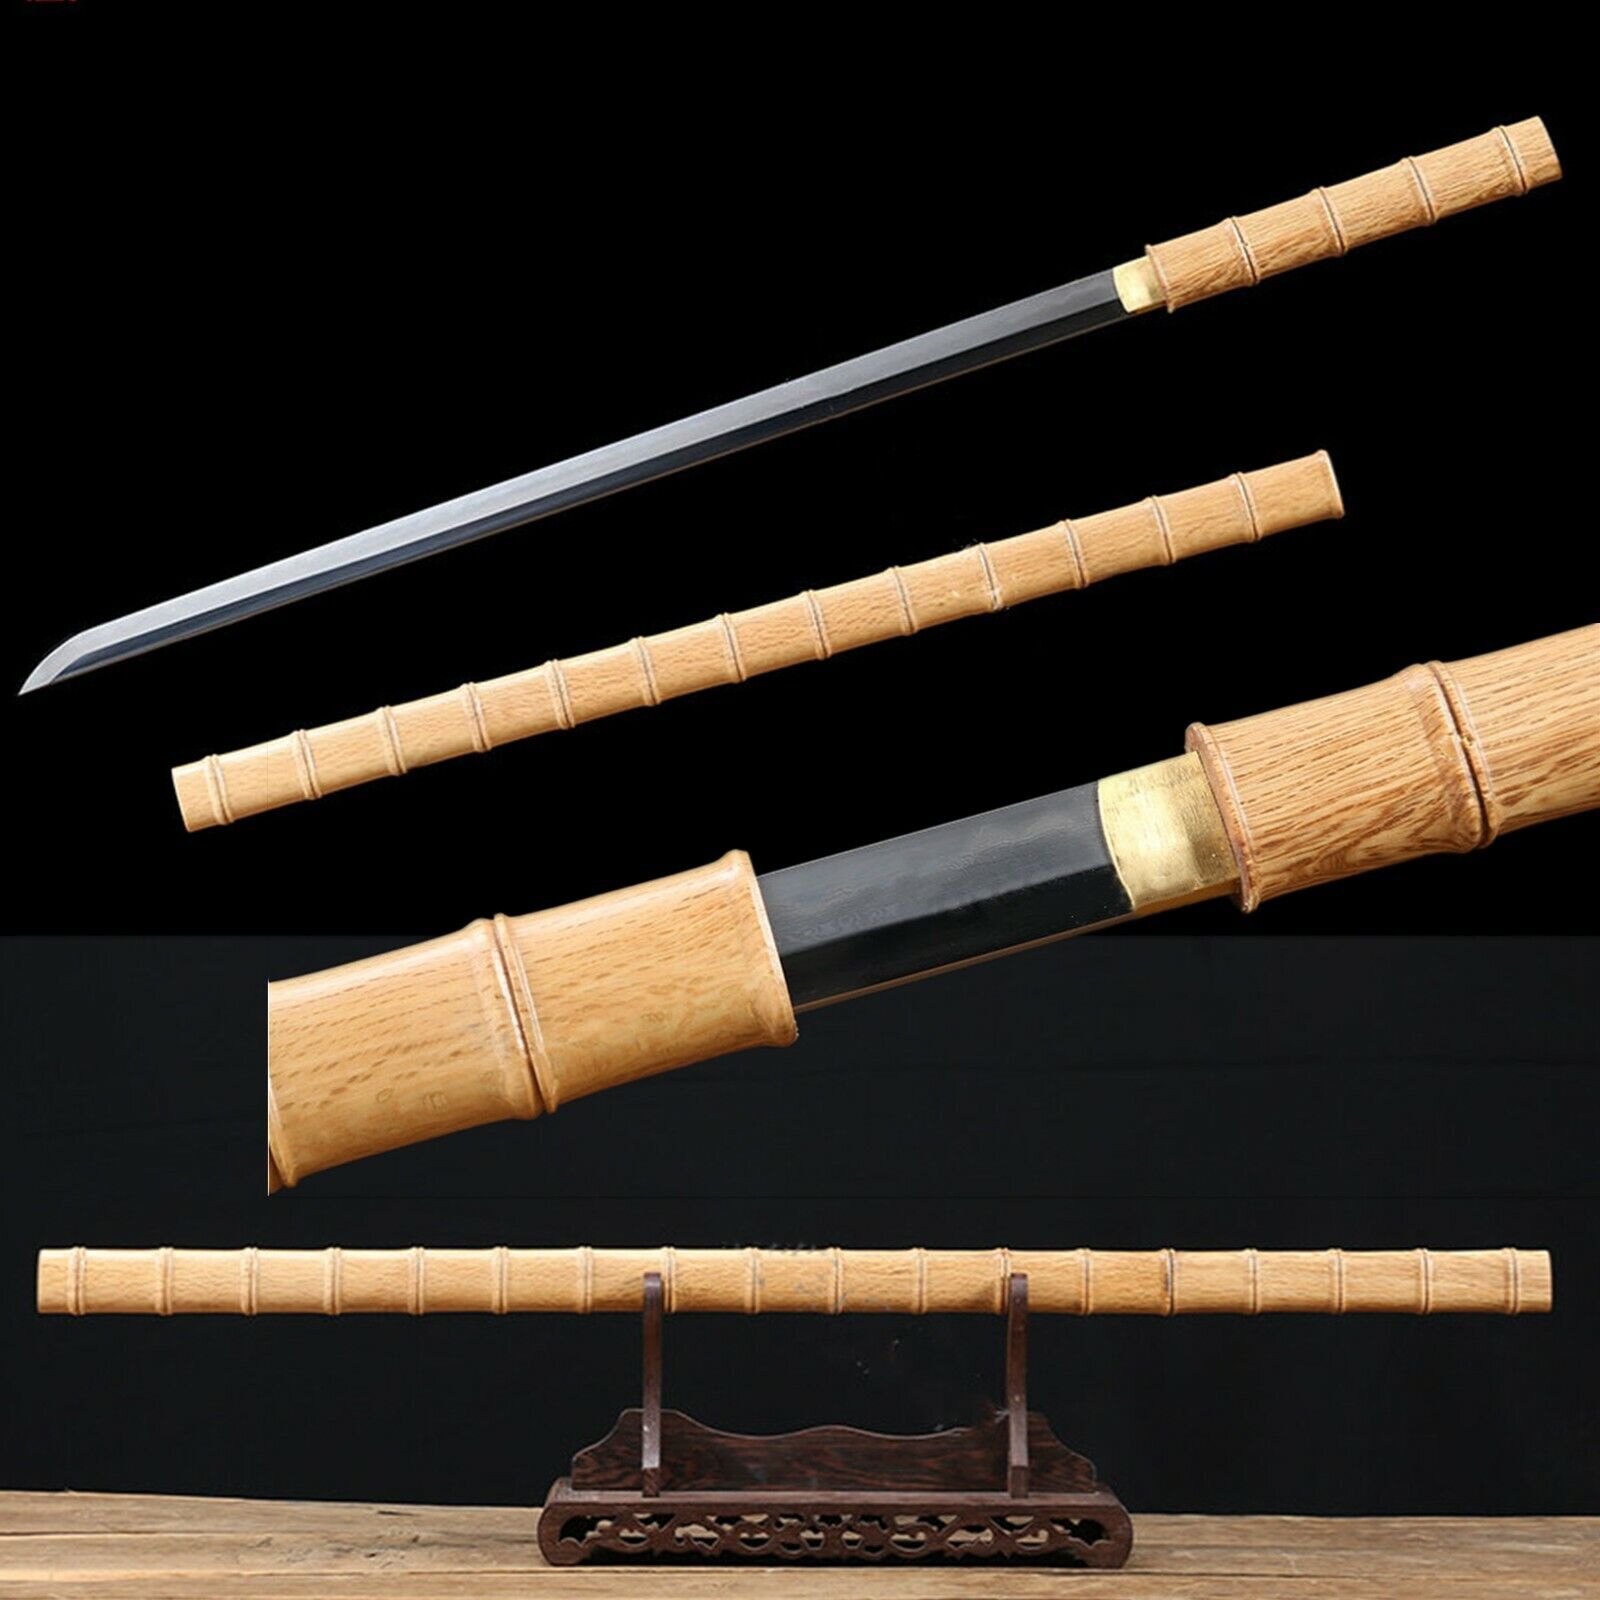 Handmade Folded Steel Clay tempered Shirasaya Samurai Sword  Sharp bamboo Saya